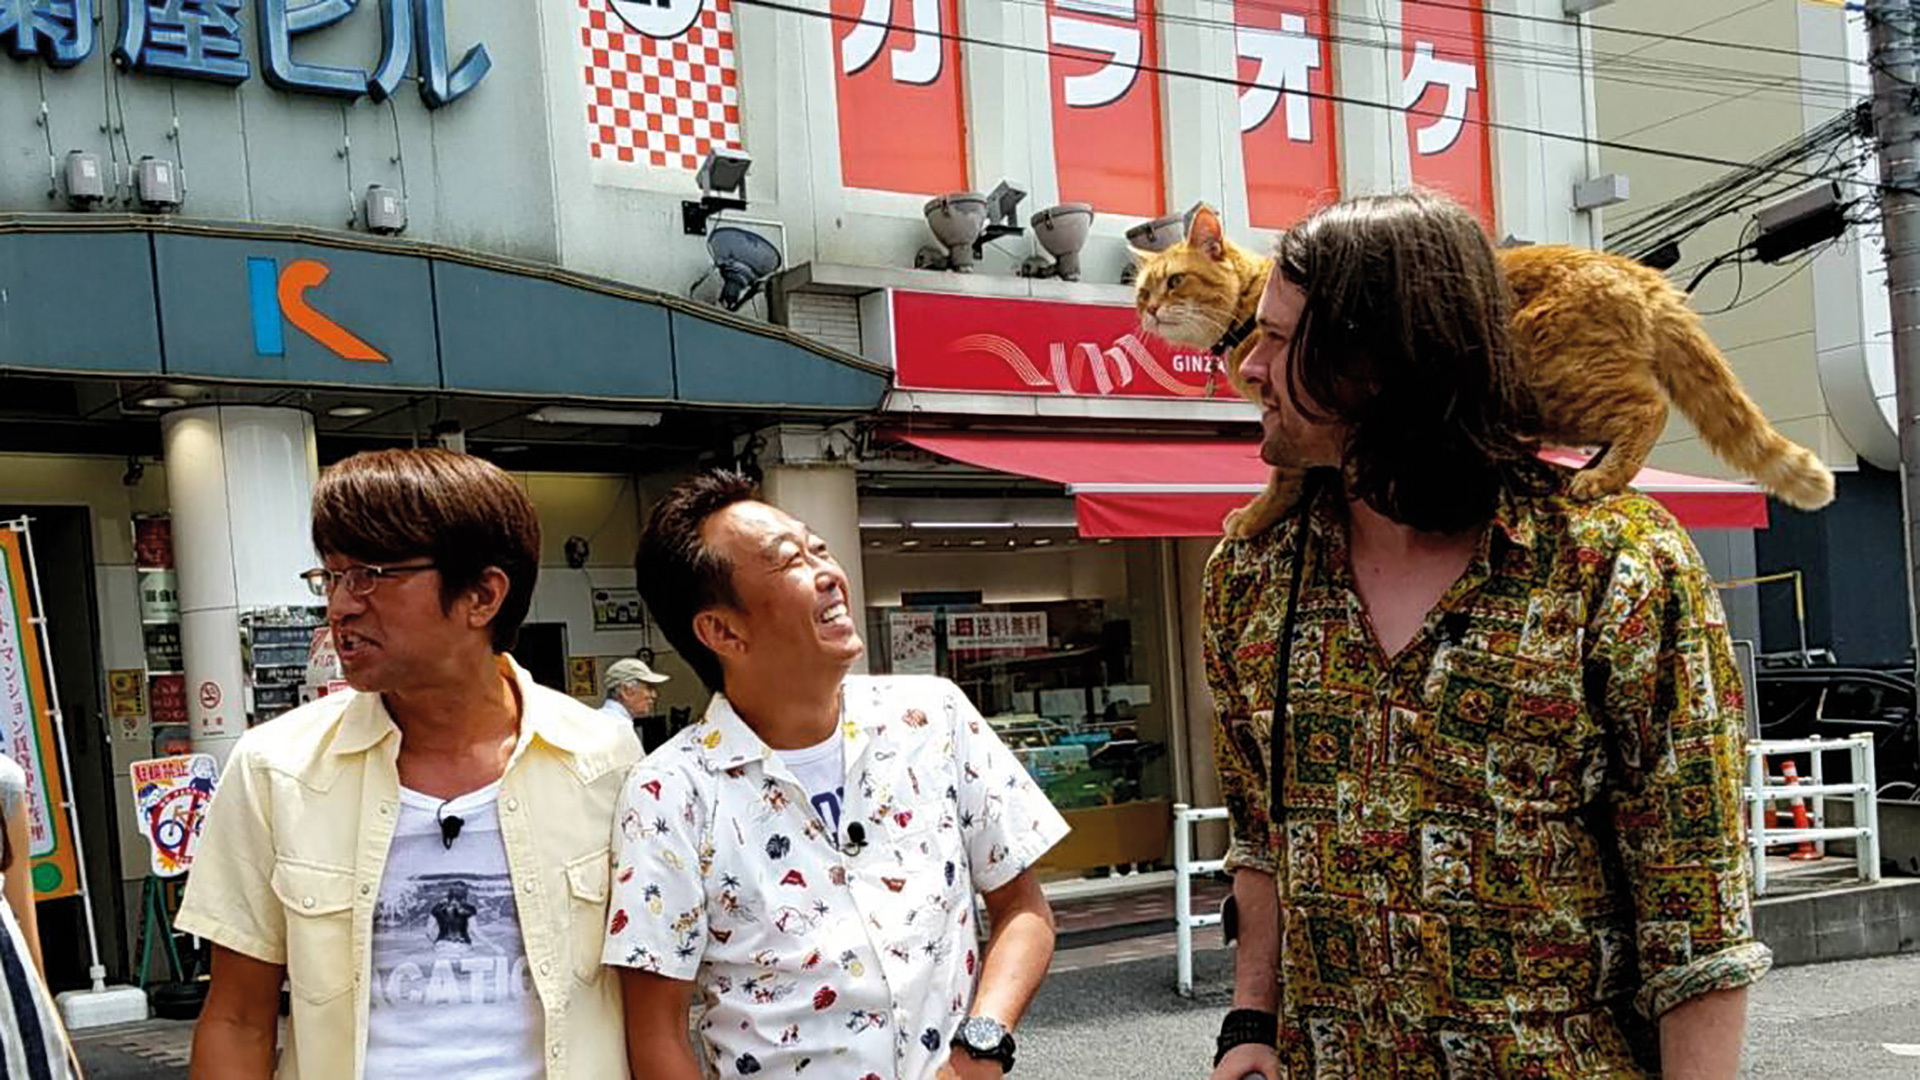 Street Cat Bob and James Bowen meet fans in Japan